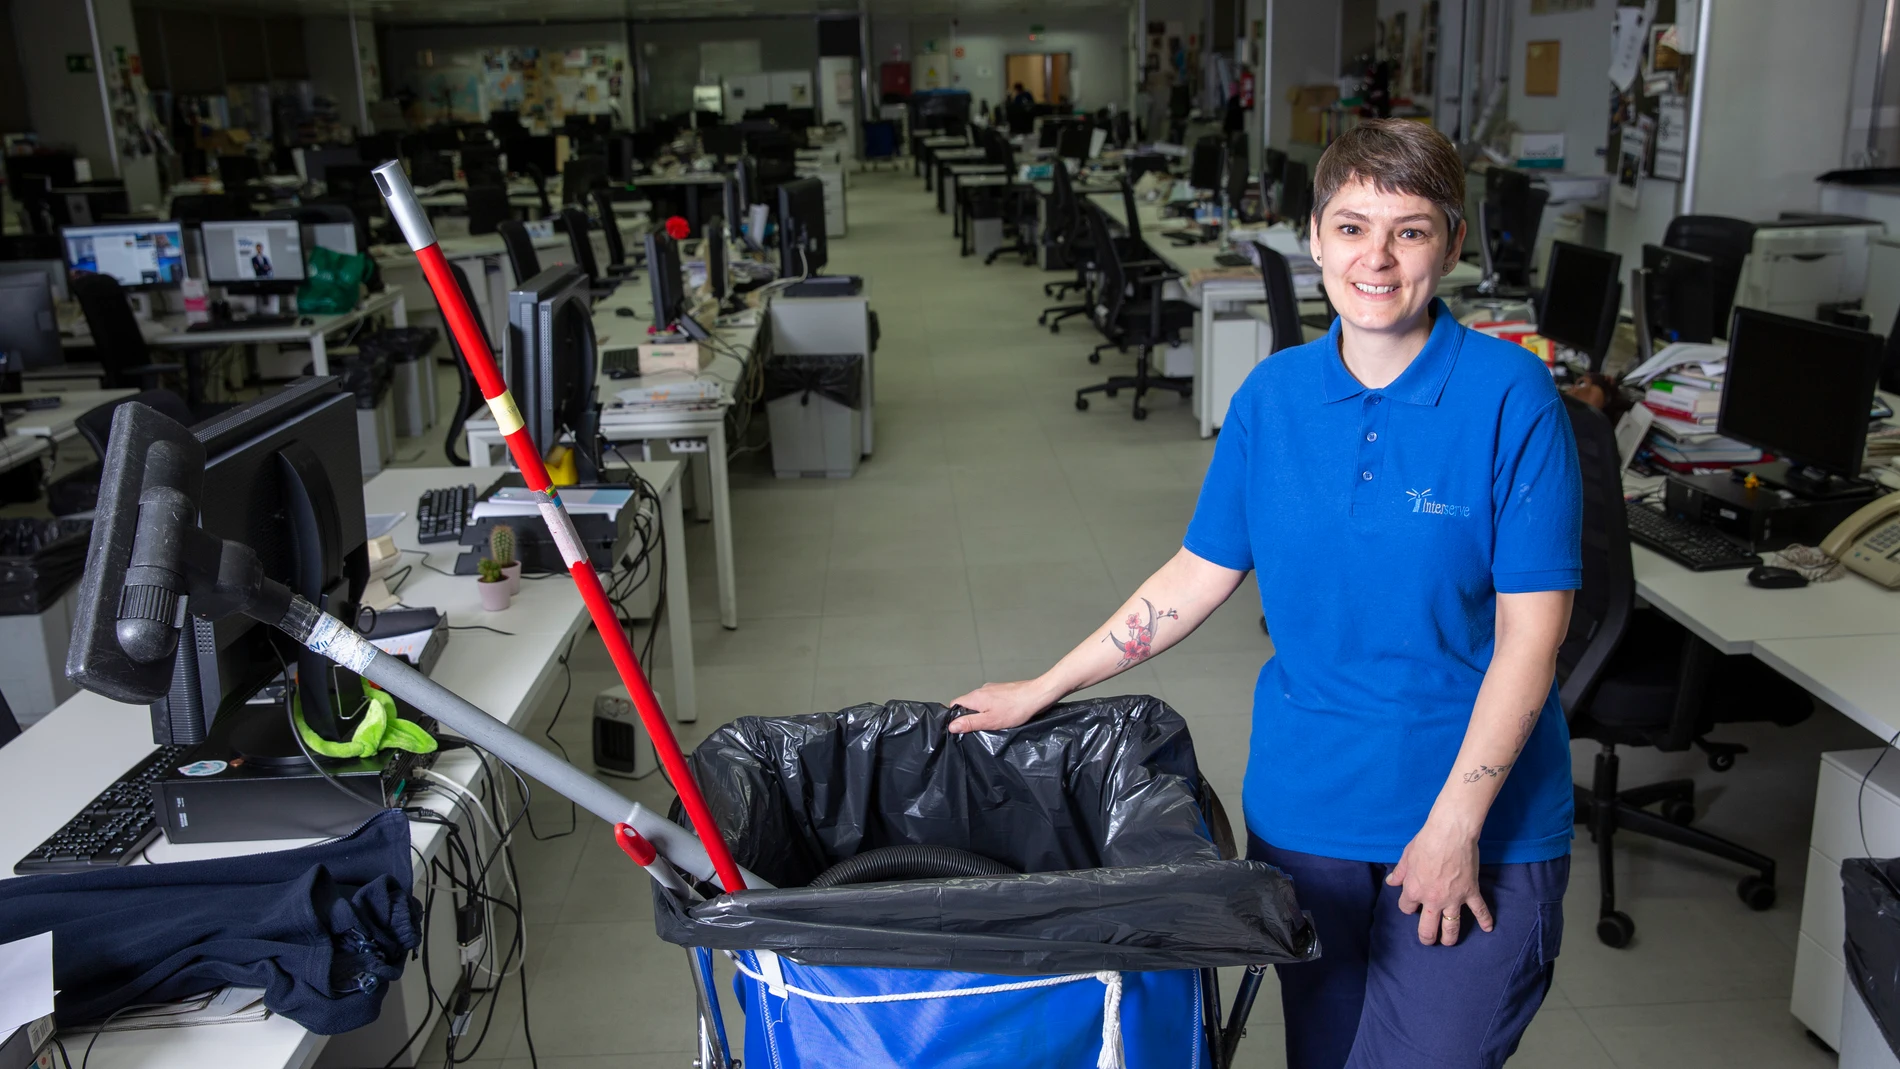 Vicky lleva trabajando desde los 16 años, es limpiadora y compagina dos trabajos a media jornada para poder conciliar / Foto: Javier Fdez-Largo